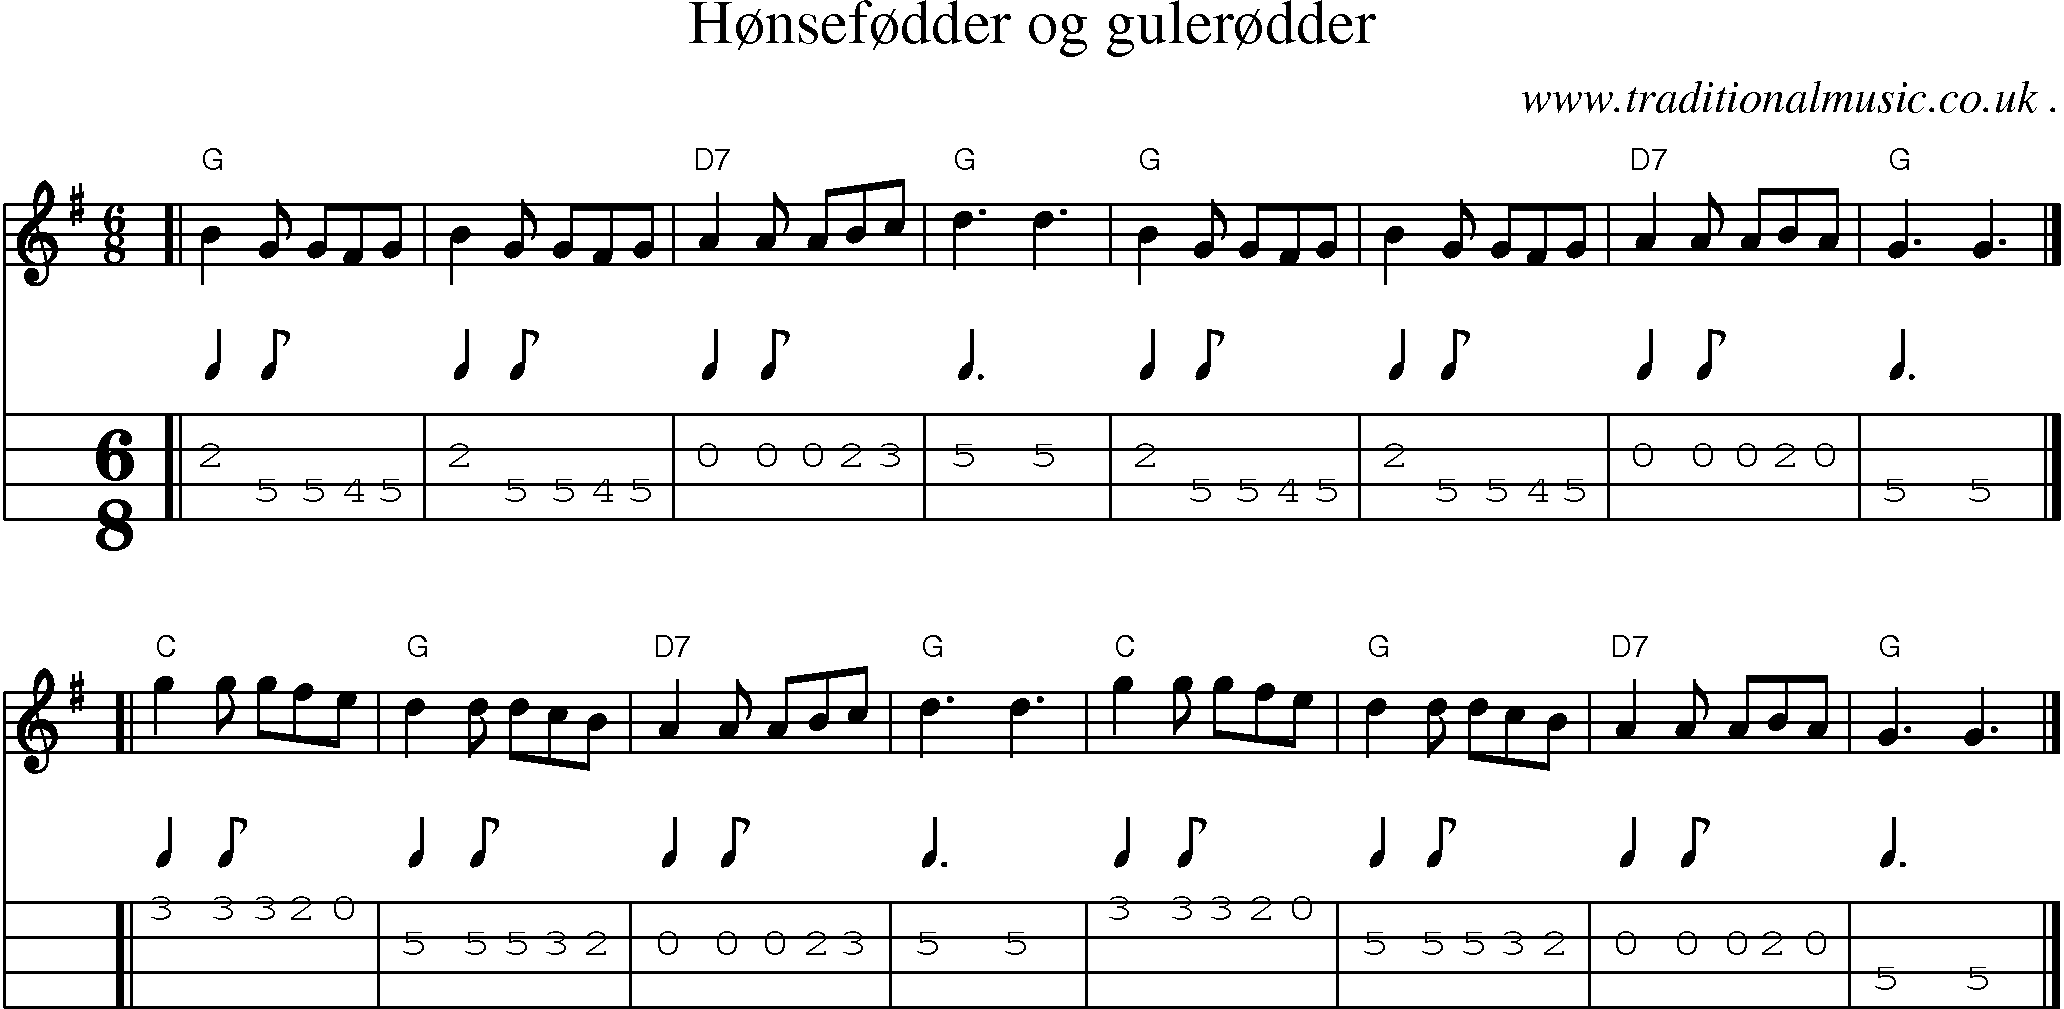 Sheet-music  score, Chords and Mandolin Tabs for Honsefodder Og Gulerodder